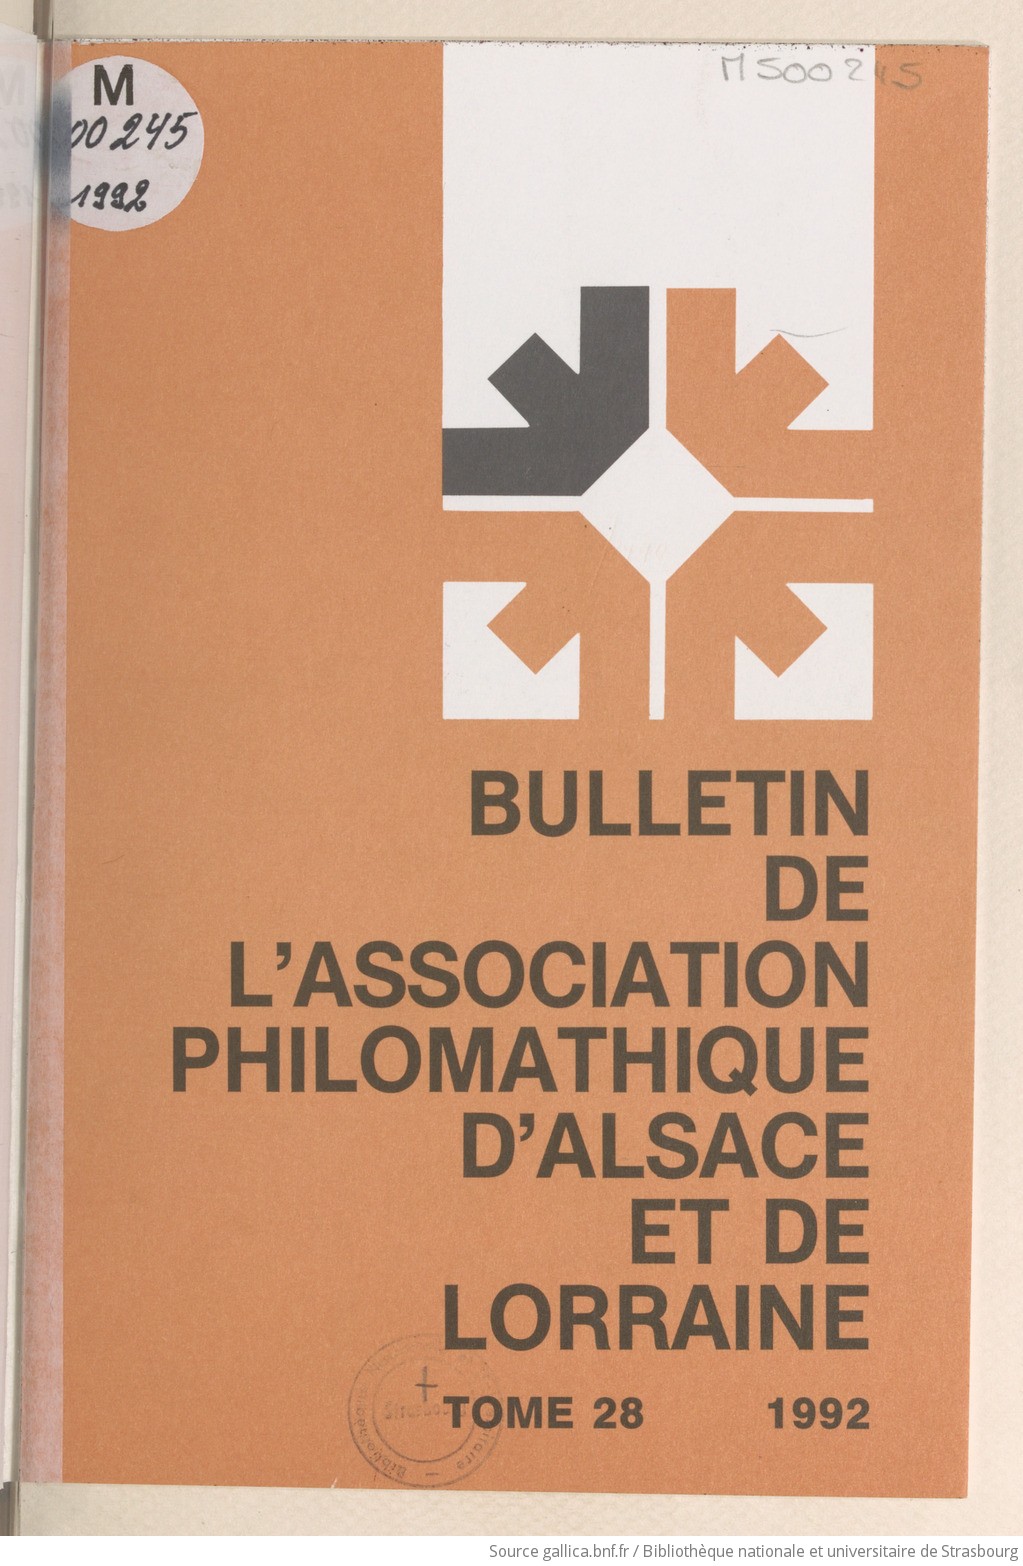 Bulletin de l'Association philomathique d'Alsace et de Lorraine